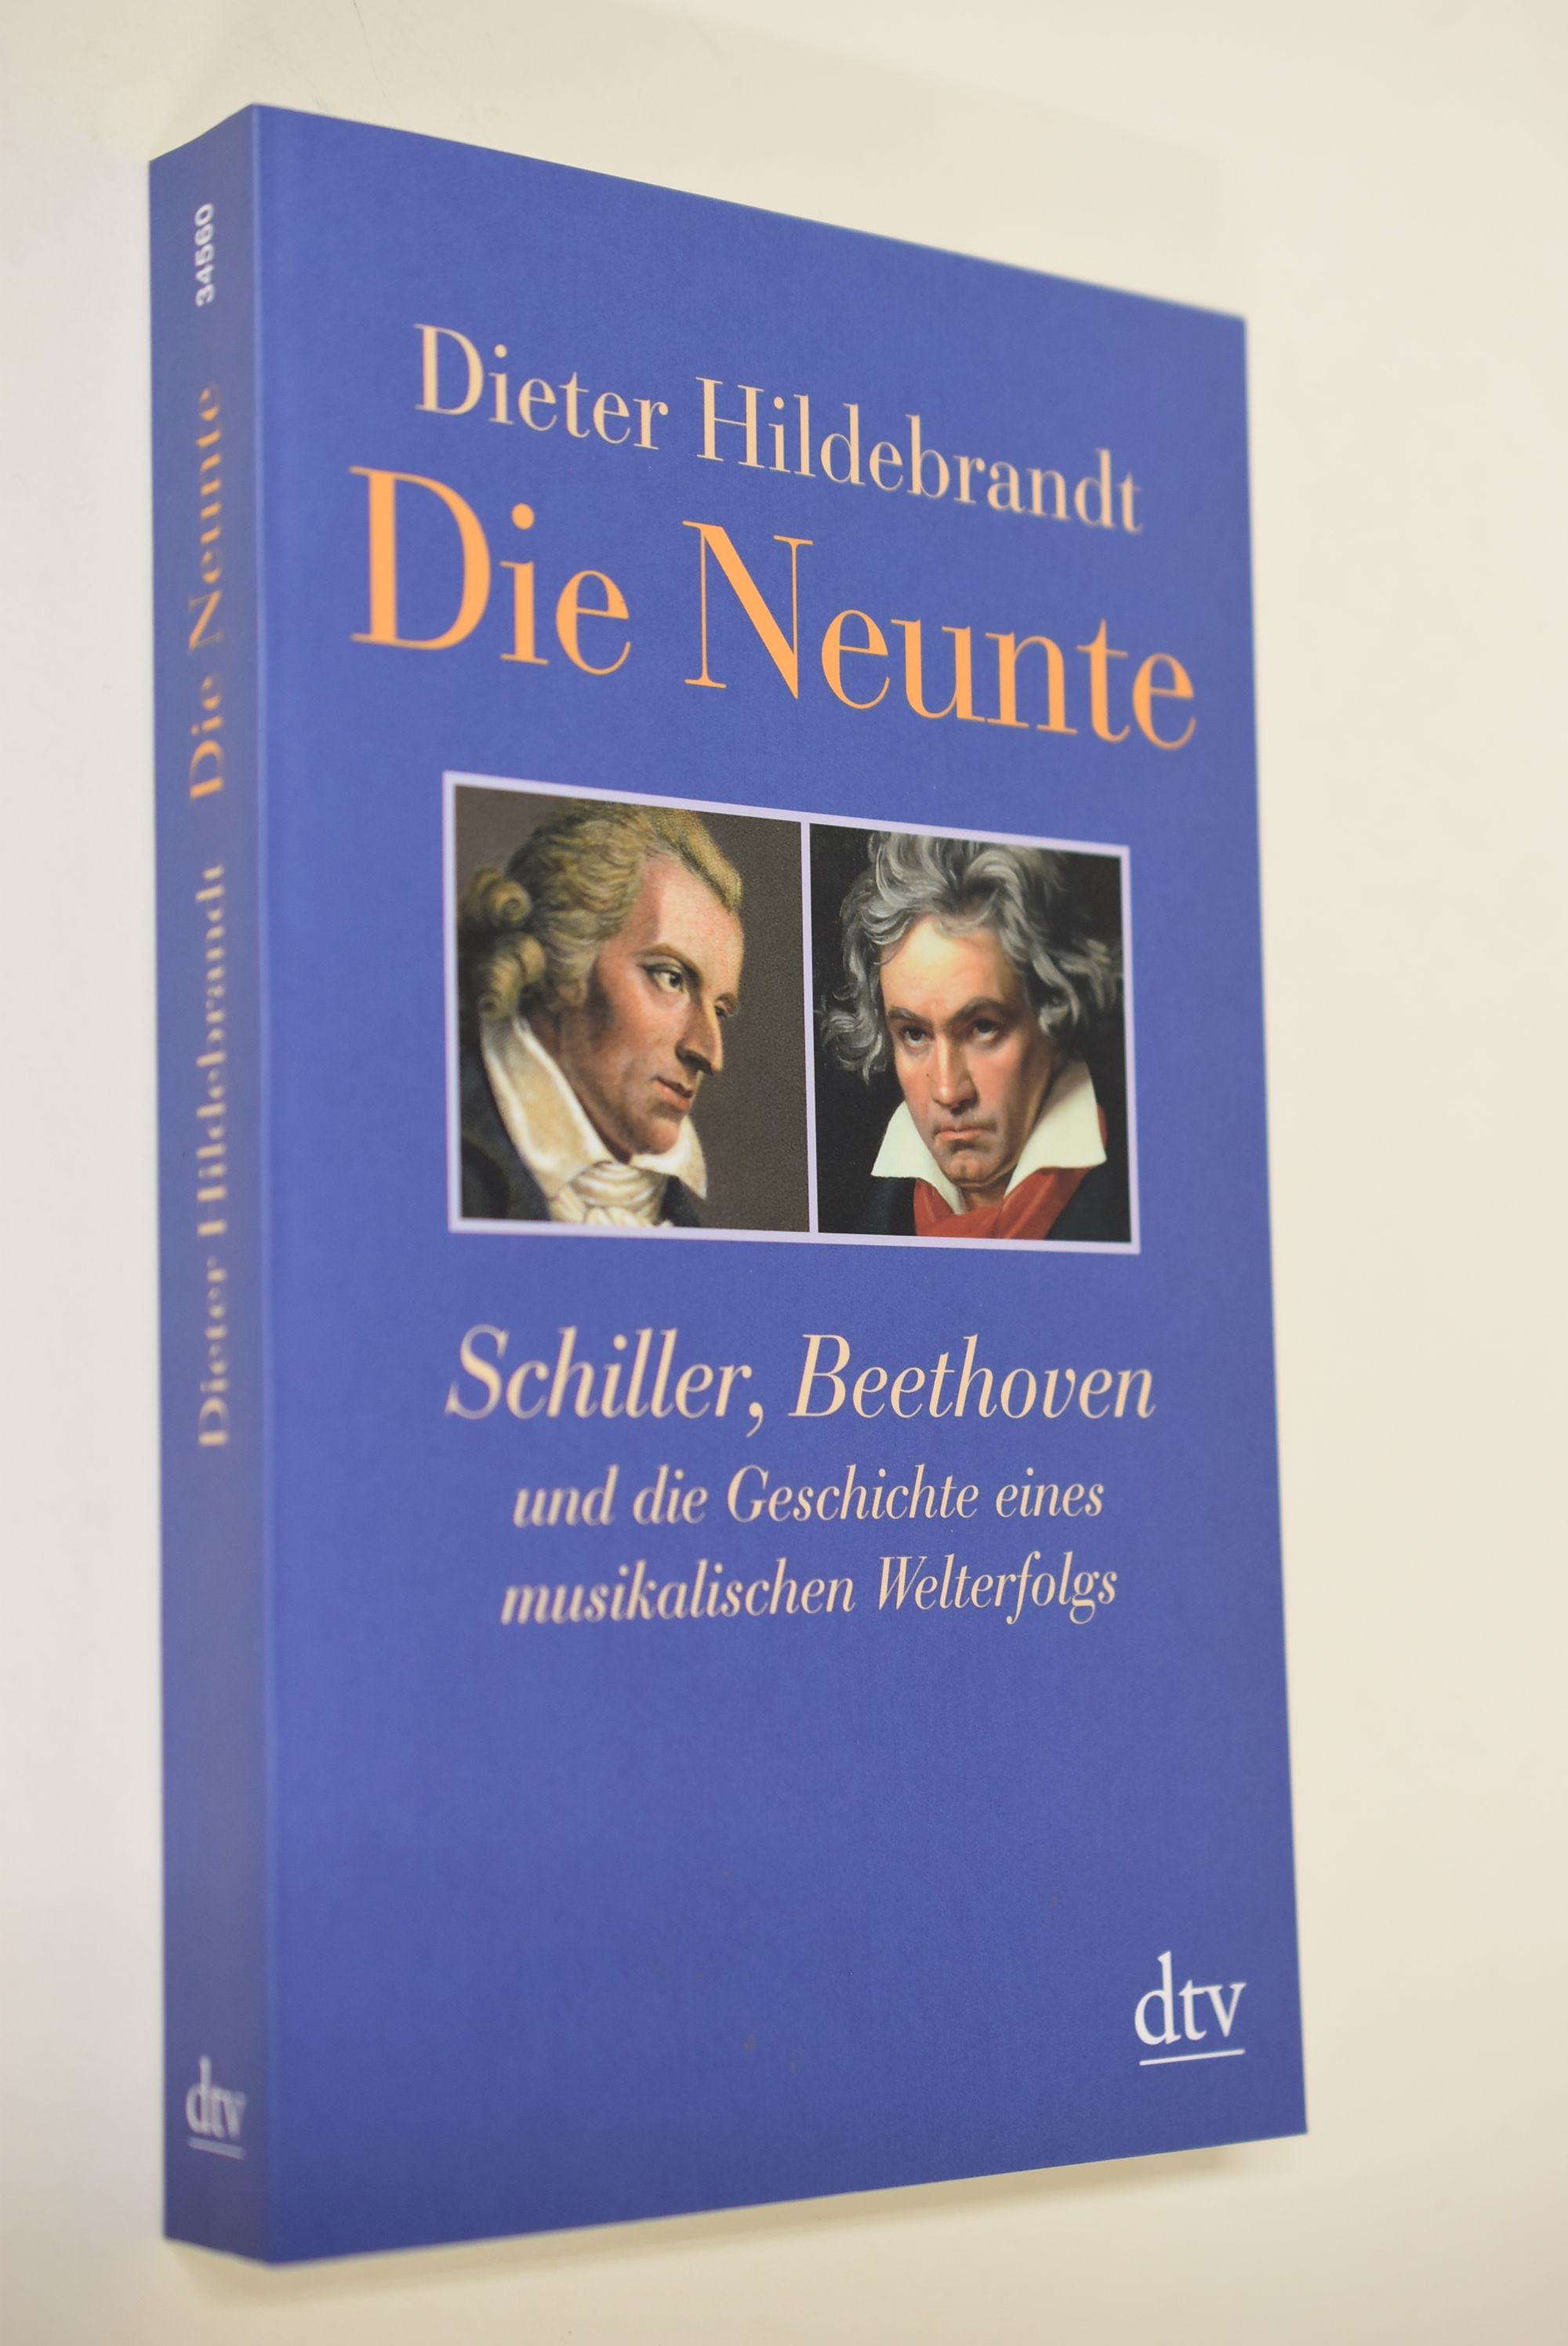 Die Neunte : Schiller, Beethoven und die Geschichte eines musikalischen Welterfolgs. dtv ; 34560 - Hildebrandt, Dieter